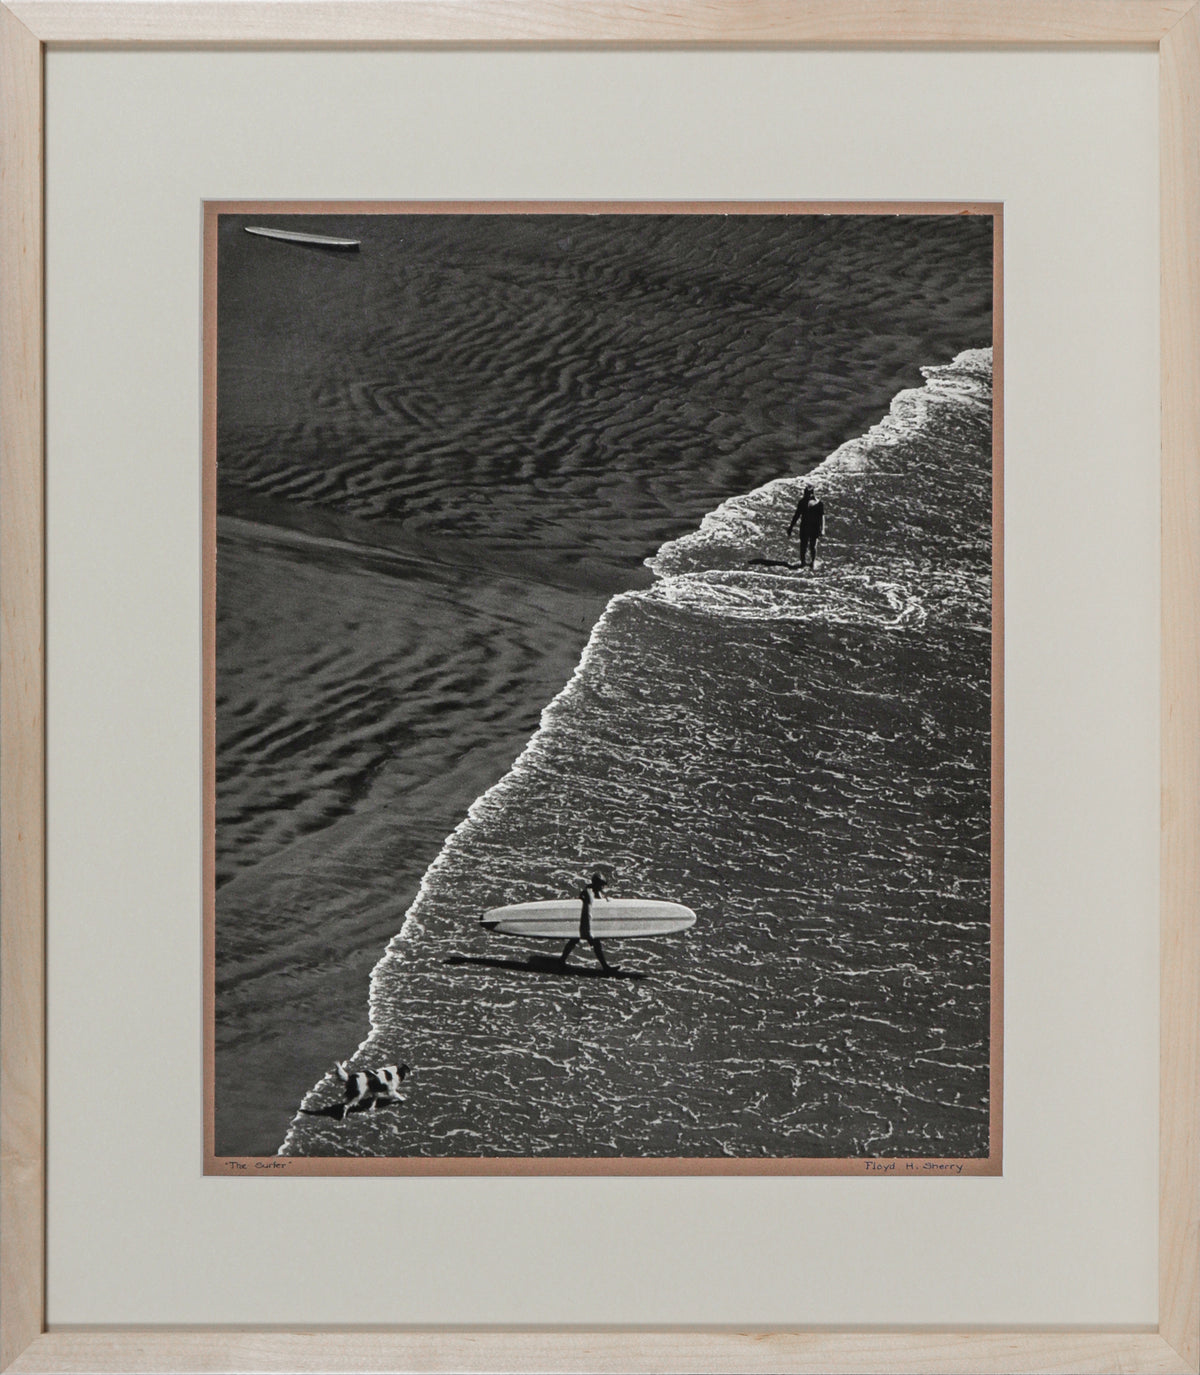 &lt;i&gt;The Surfer&lt;/i&gt; &lt;br&gt;1966 Photograph &lt;br&gt;&lt;br&gt;#C0456